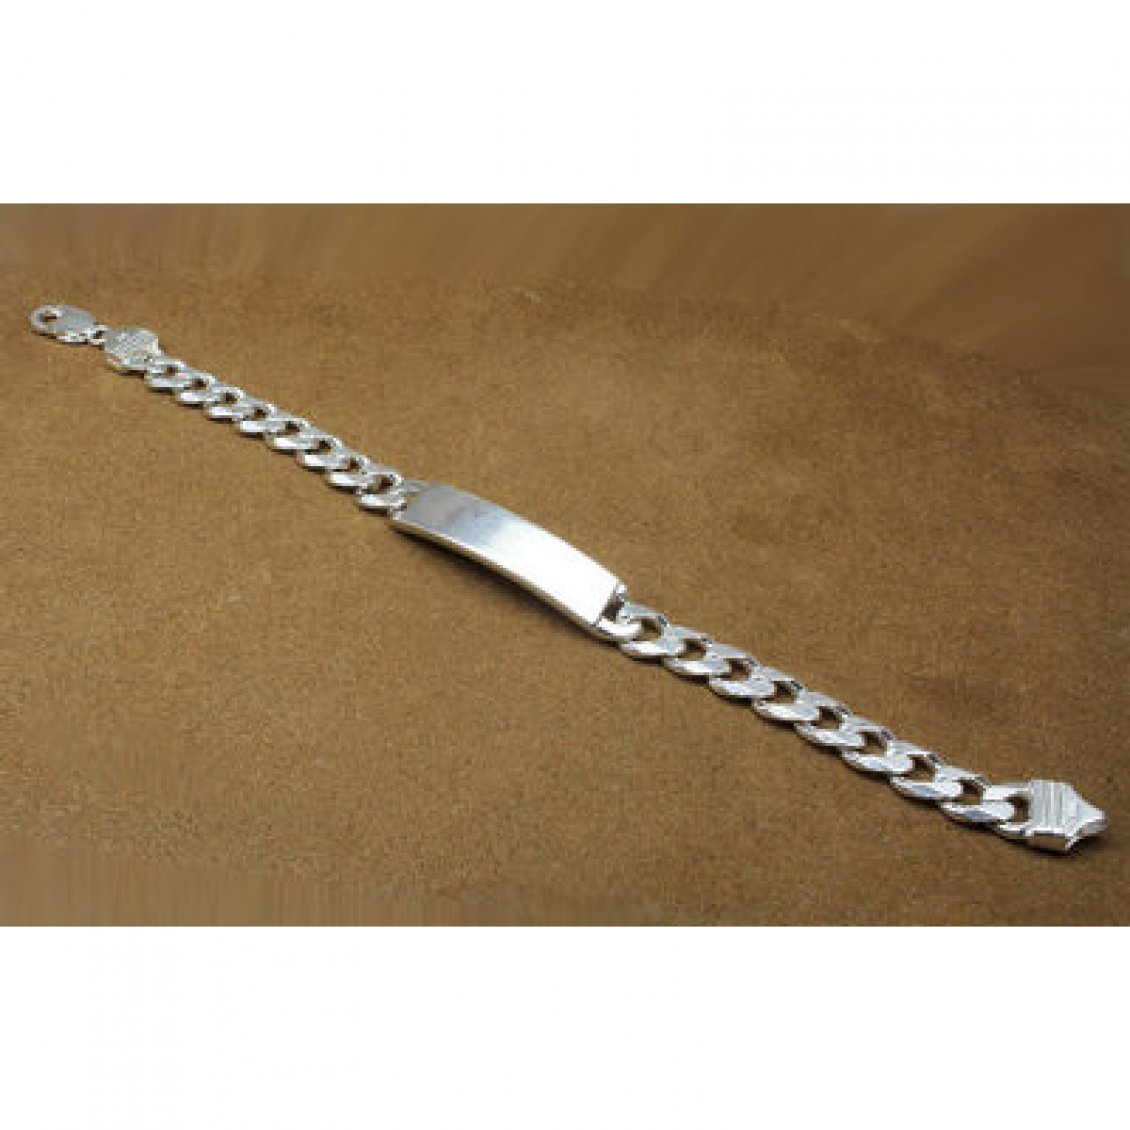 Pure Silver Bracelet Men - Chaandi Bracelet (9 Inch)